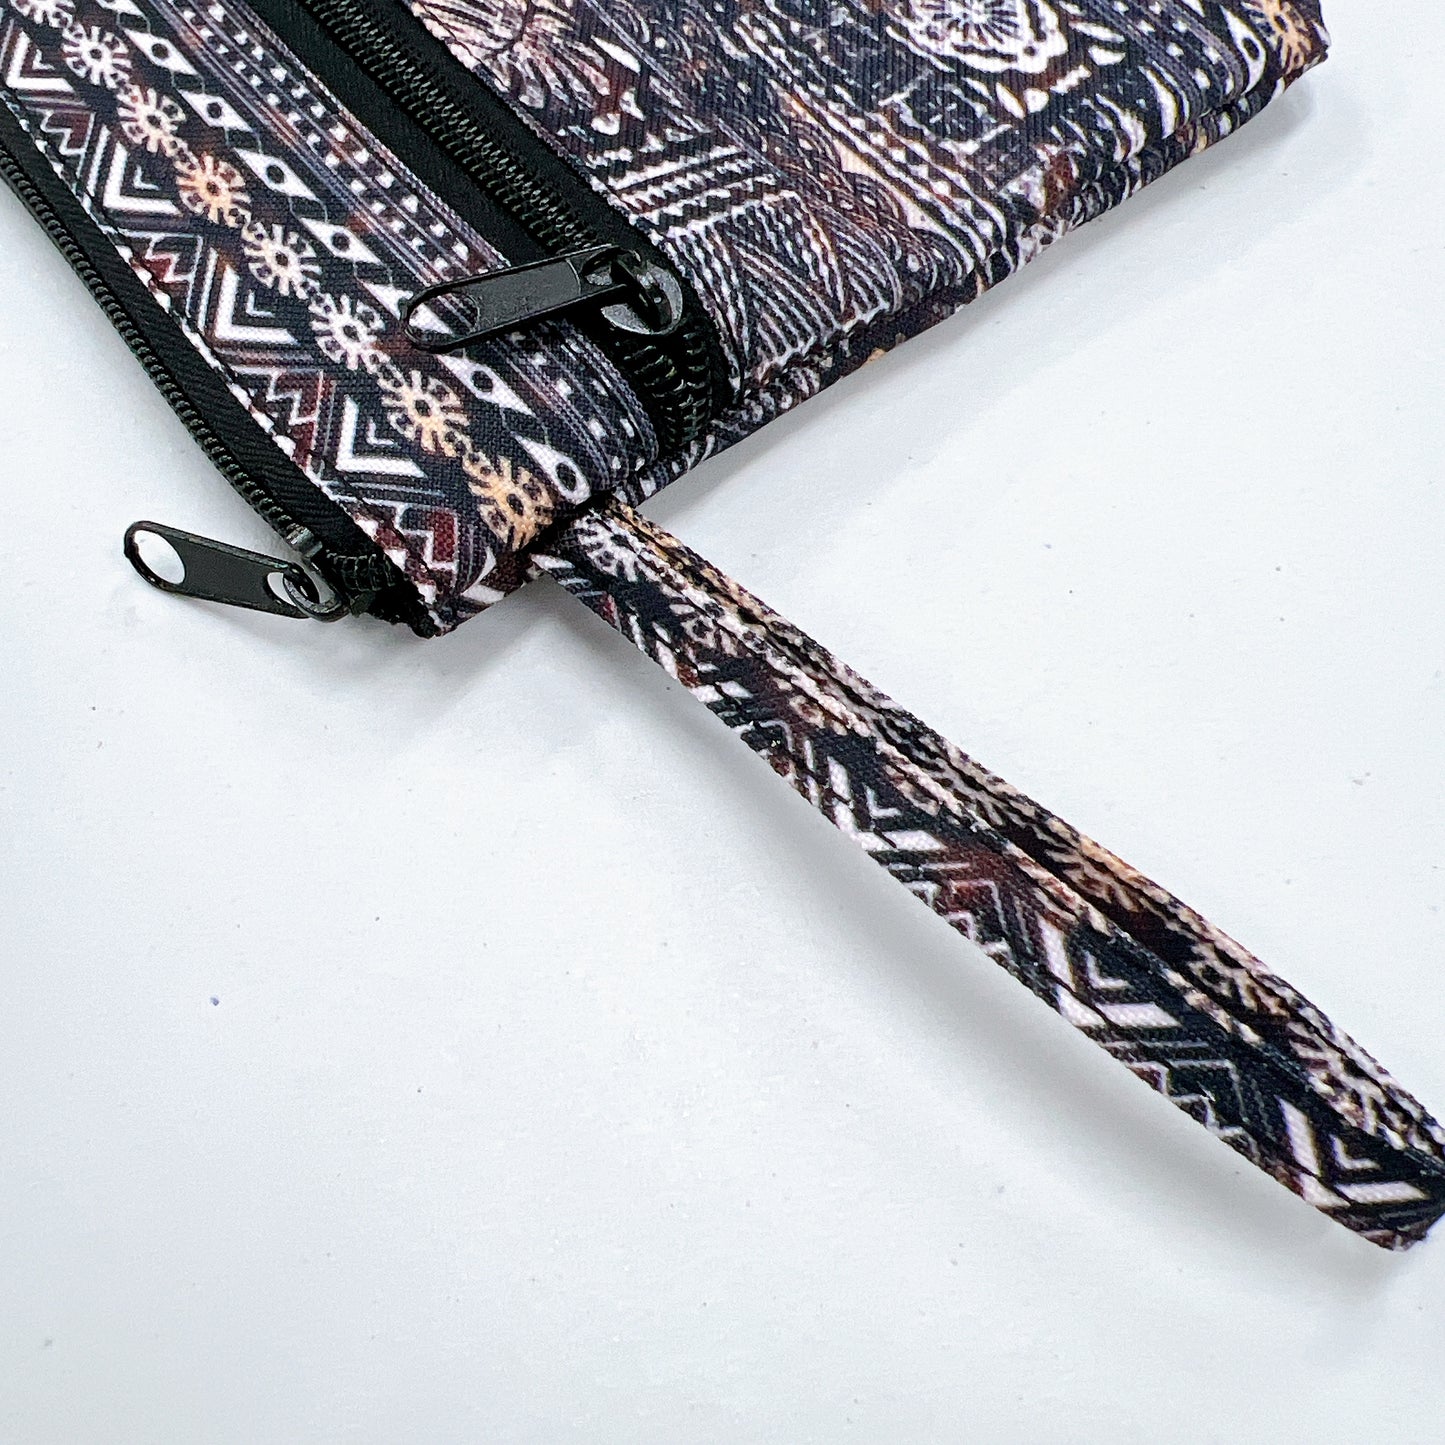 Polynesian pattern clutch bag